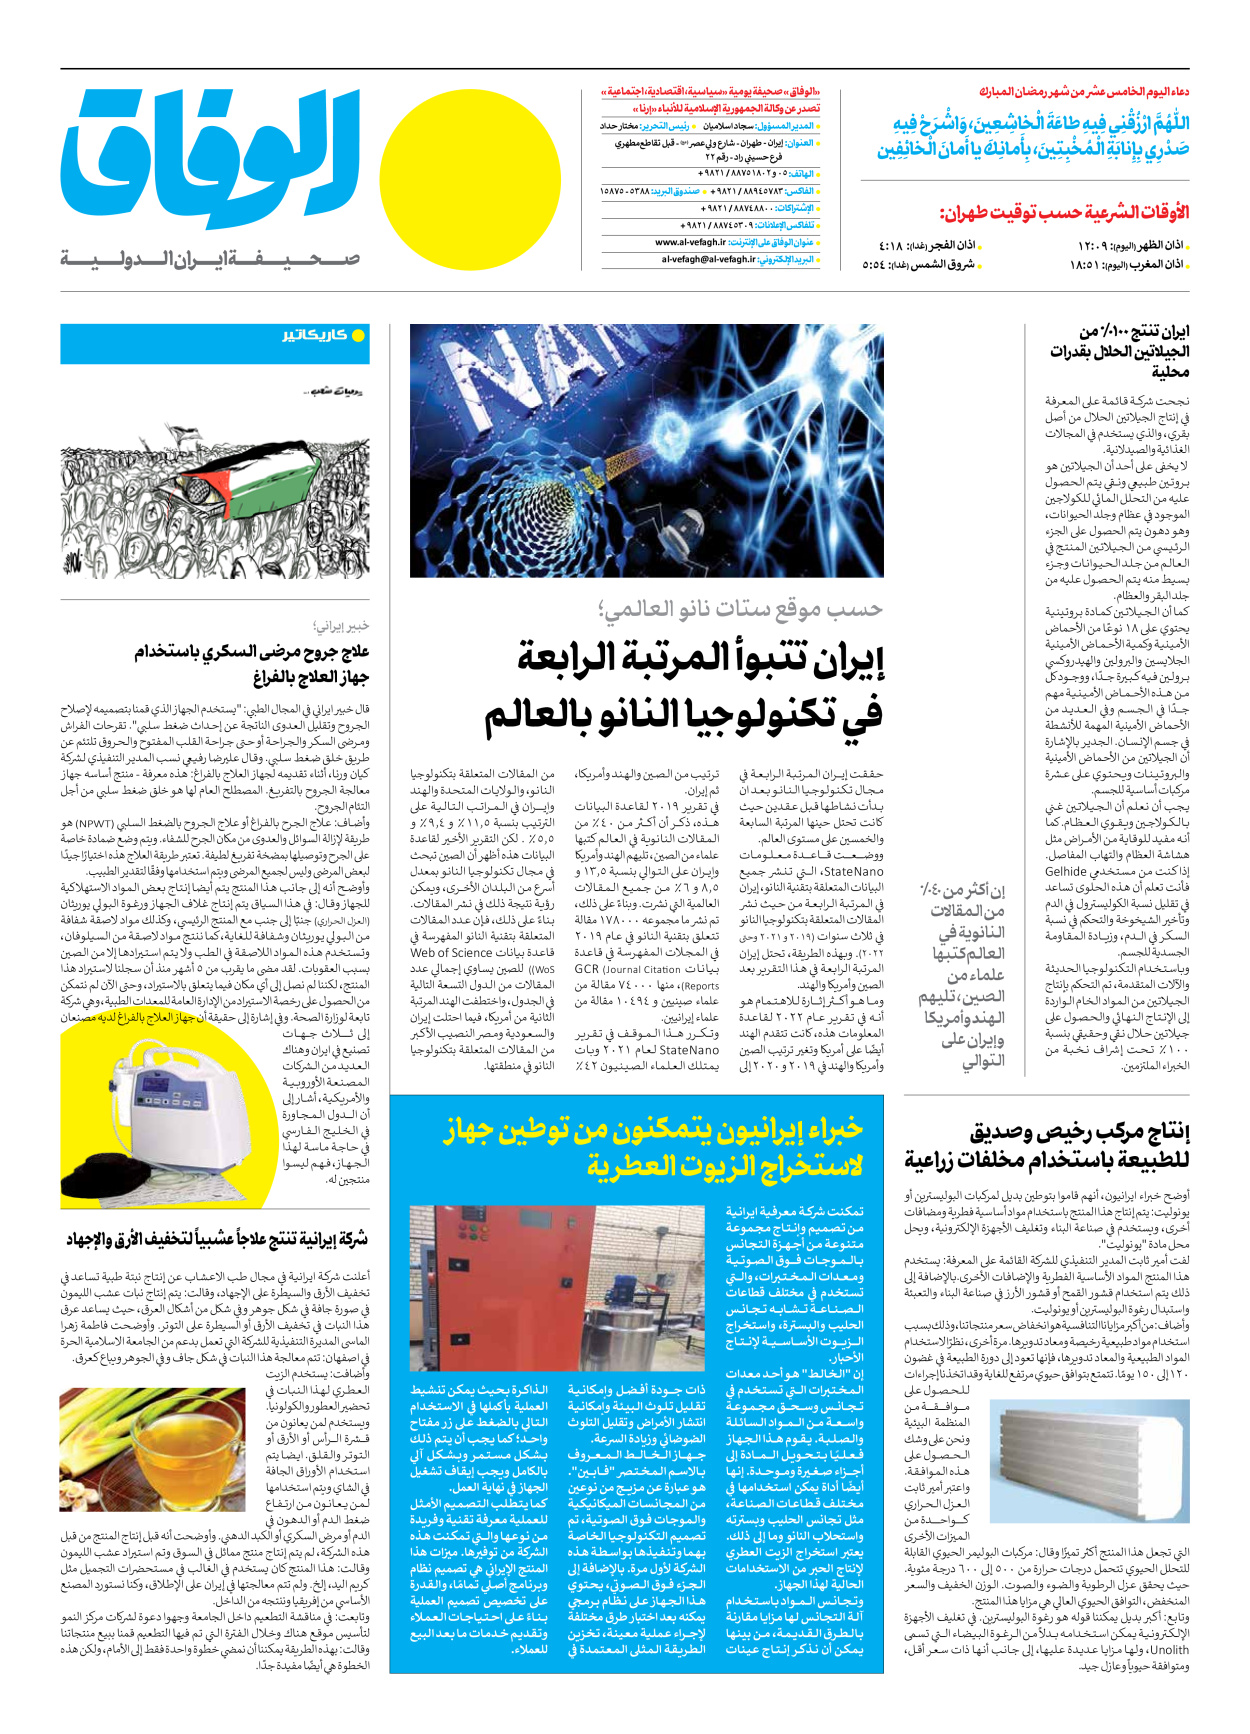 صحیفة ایران الدولیة الوفاق - العدد سبعة آلاف ومائتان وسبعة - ٠٦ أبريل ٢٠٢٣ - الصفحة ۱۲